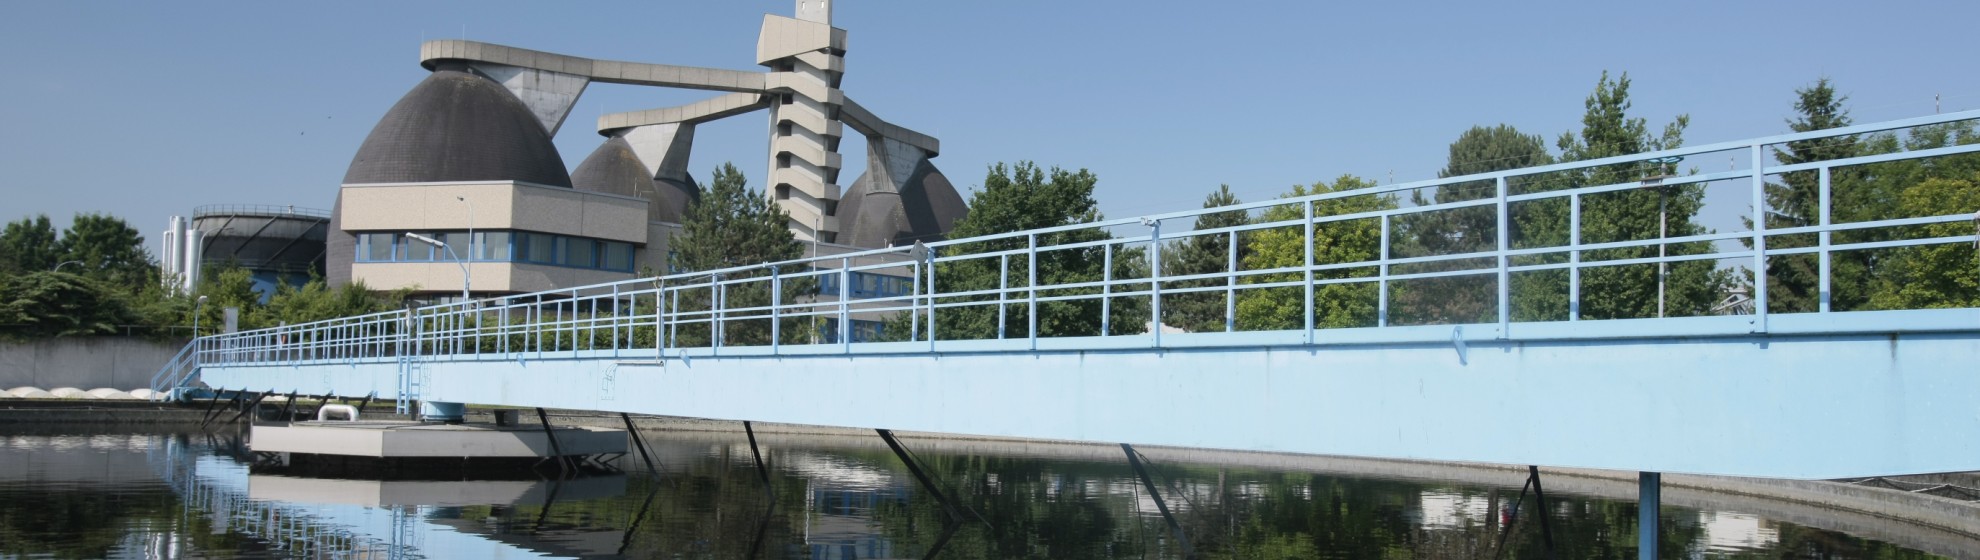 Nachklärbecken er Regionalkläranlage mit Brücke.